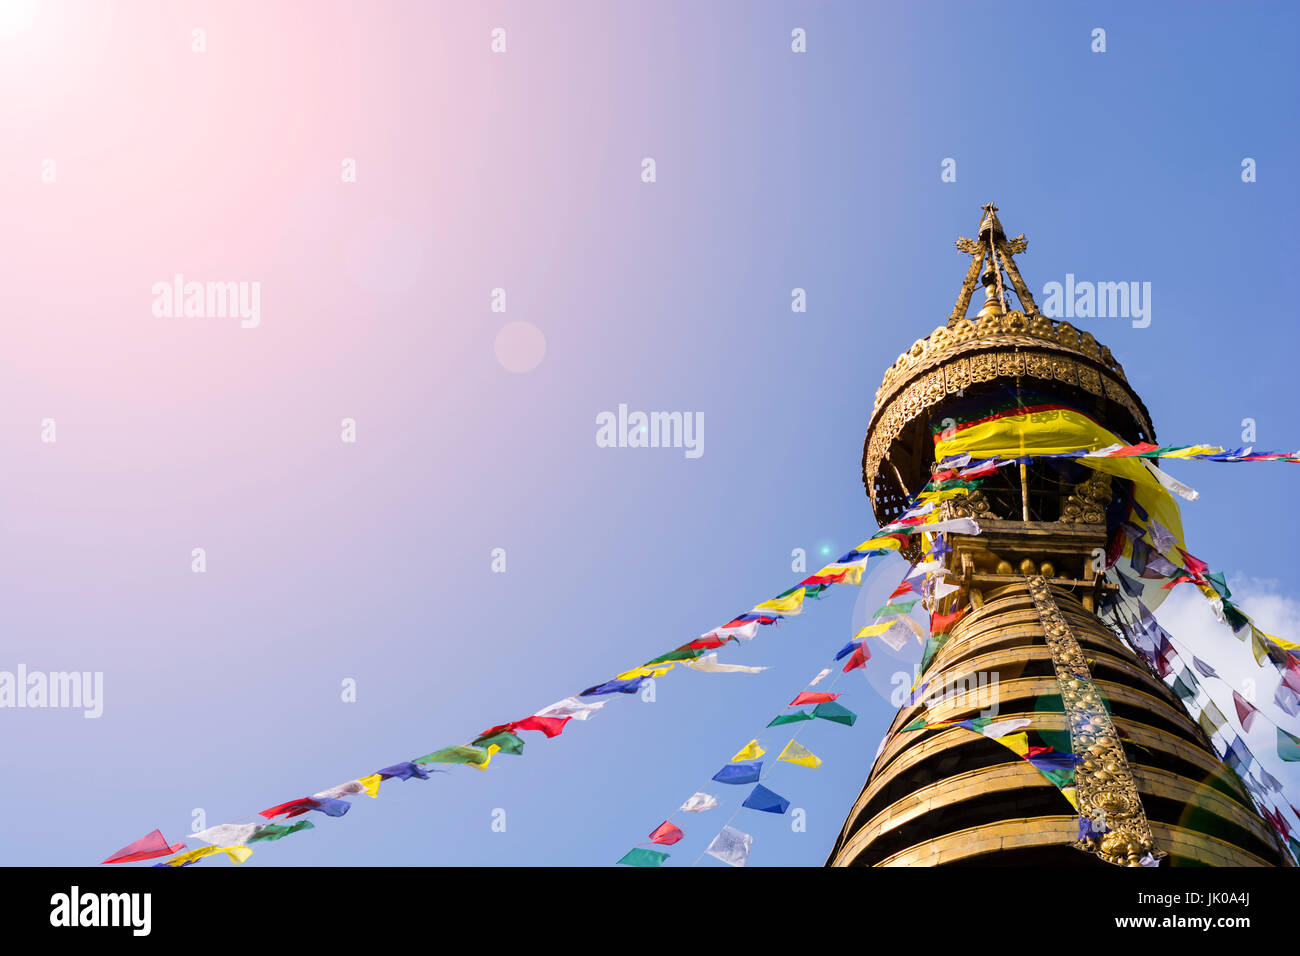 Zusammenfassung Hintergrund der Spitze der Affe Tempelraum mit bunten Gebet Fahnen und blauen Himmel im Hintergrund mit Reflexlicht, Freiheit-Konzept Stockfoto